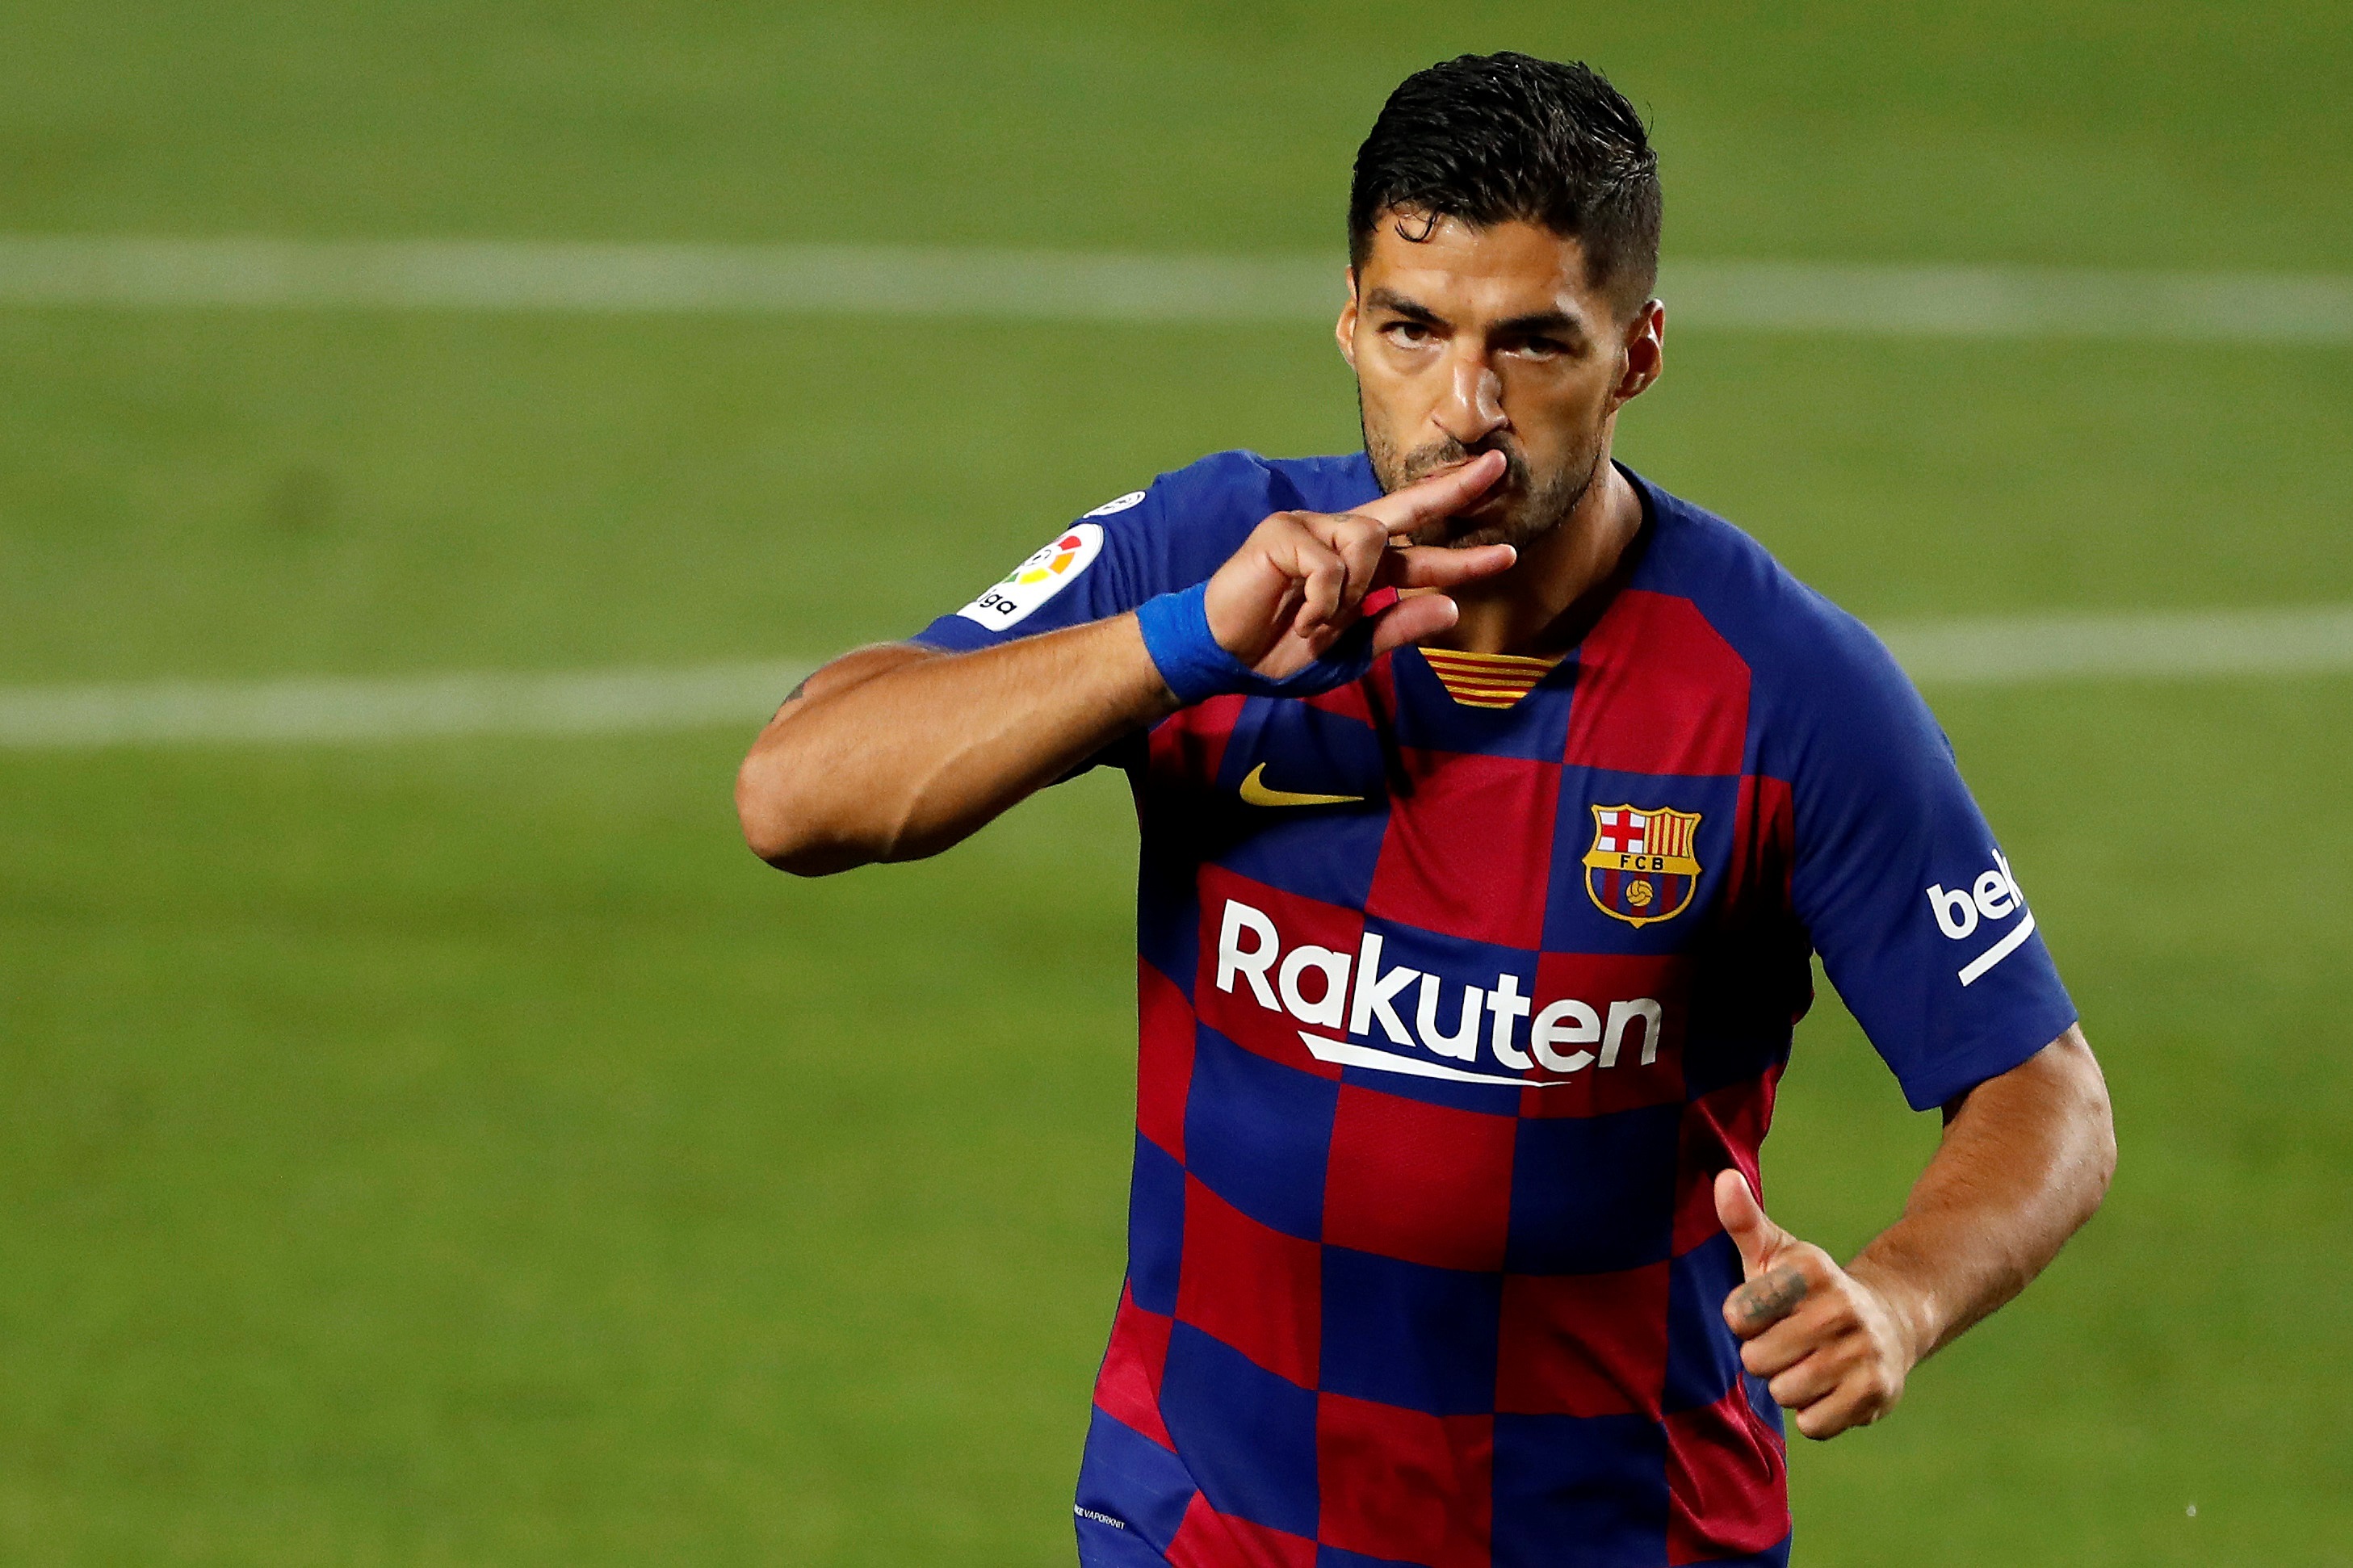 Luis Suárez estalló contra el Barcelona por los rumores de su salida:  “Nadie puede poner en duda mi compromiso con el club” - Infobae